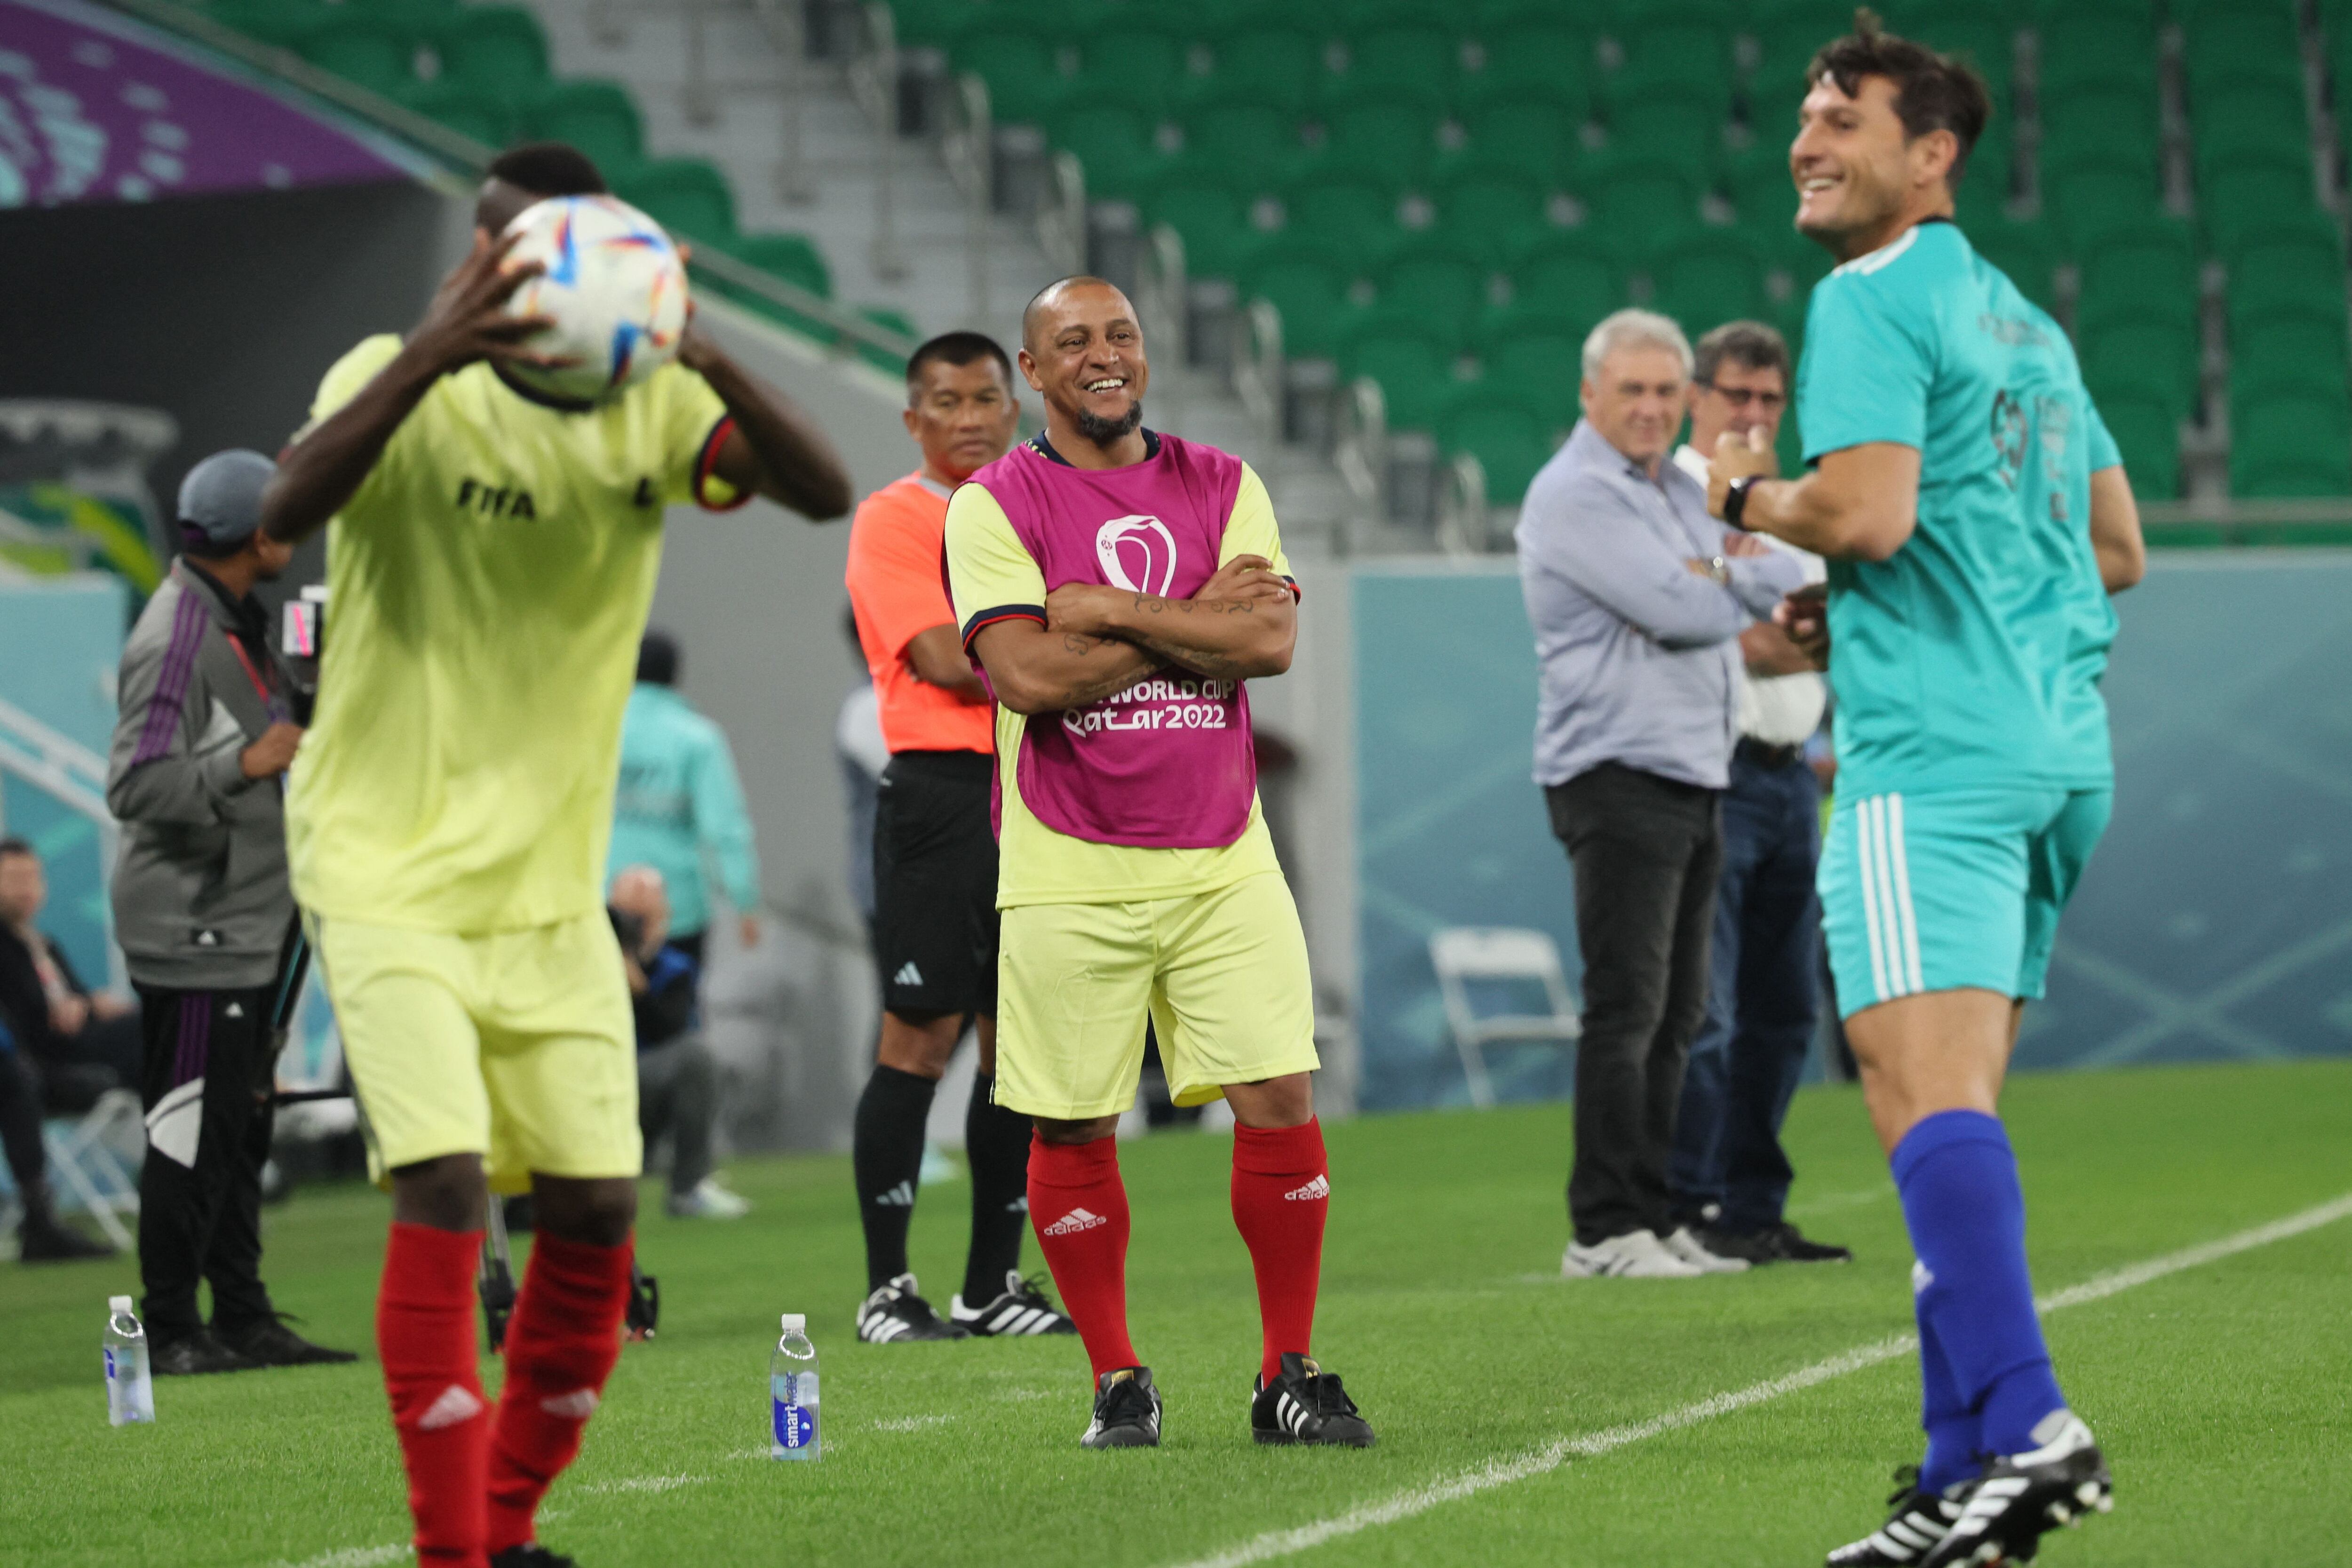 El exfutbolista brasileño Roberto Carlos (centro) asiste al partido amistoso de fútbol de FIFA Legends y trabajadores con sede en Qatar en el estadio Al Thumama en Doha el 12 de diciembre de 2022.